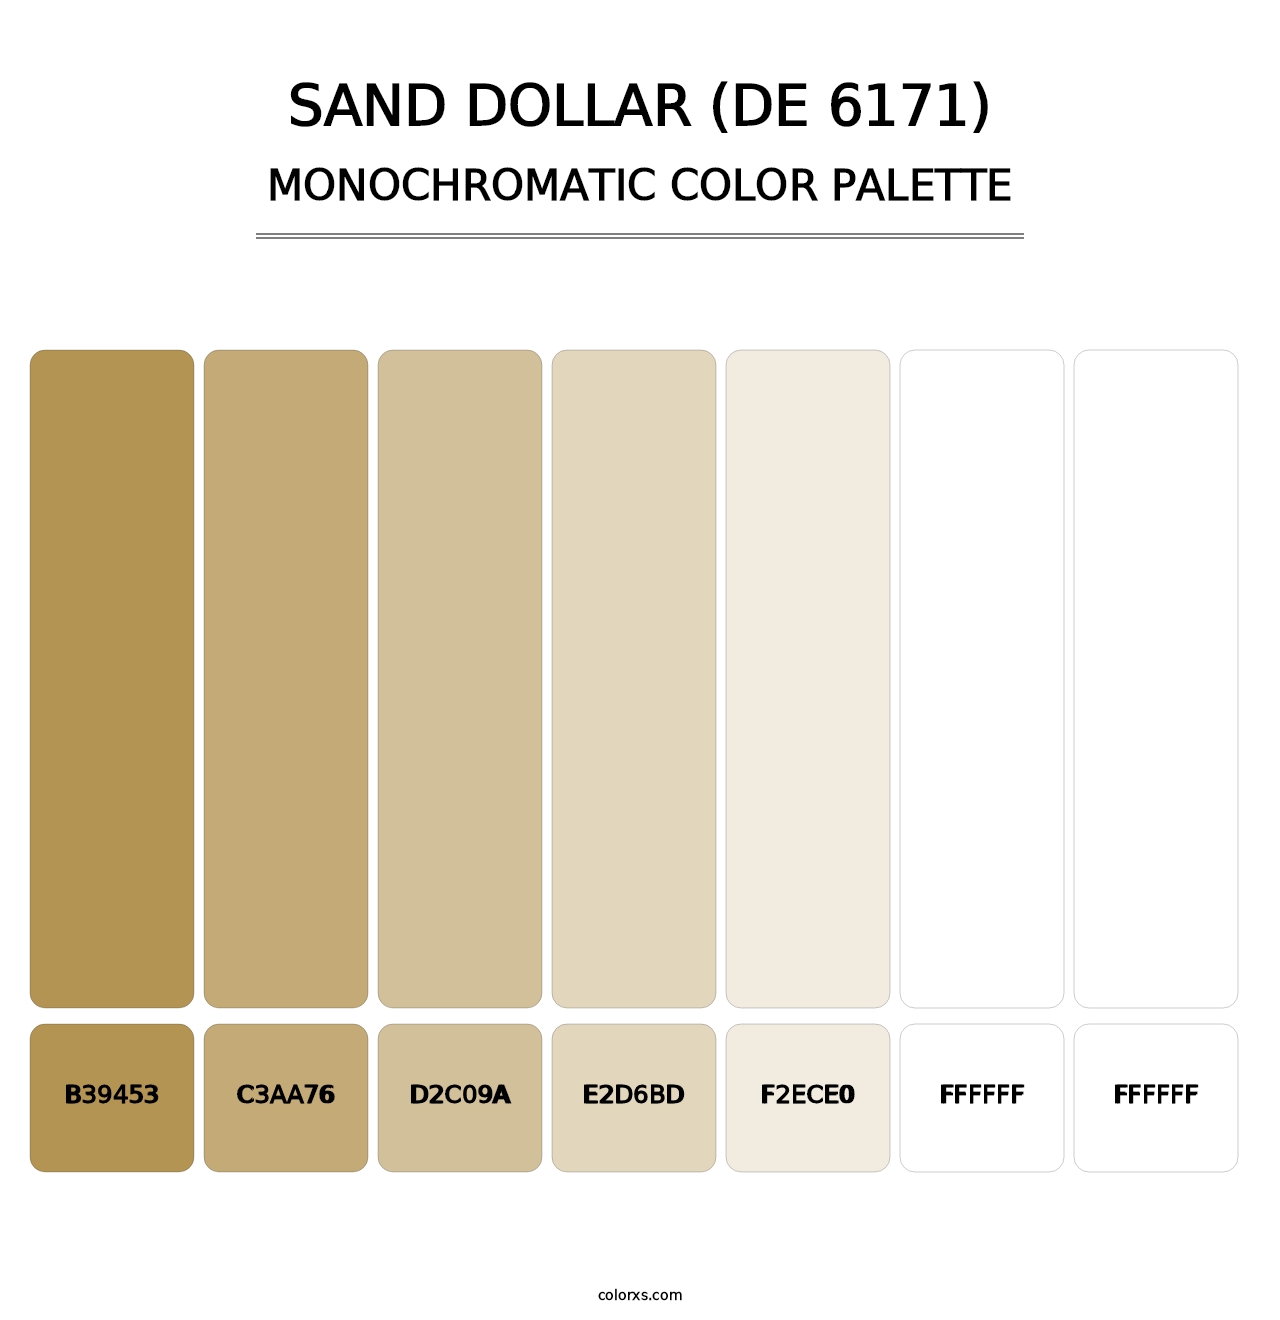 Sand Dollar (DE 6171) - Monochromatic Color Palette